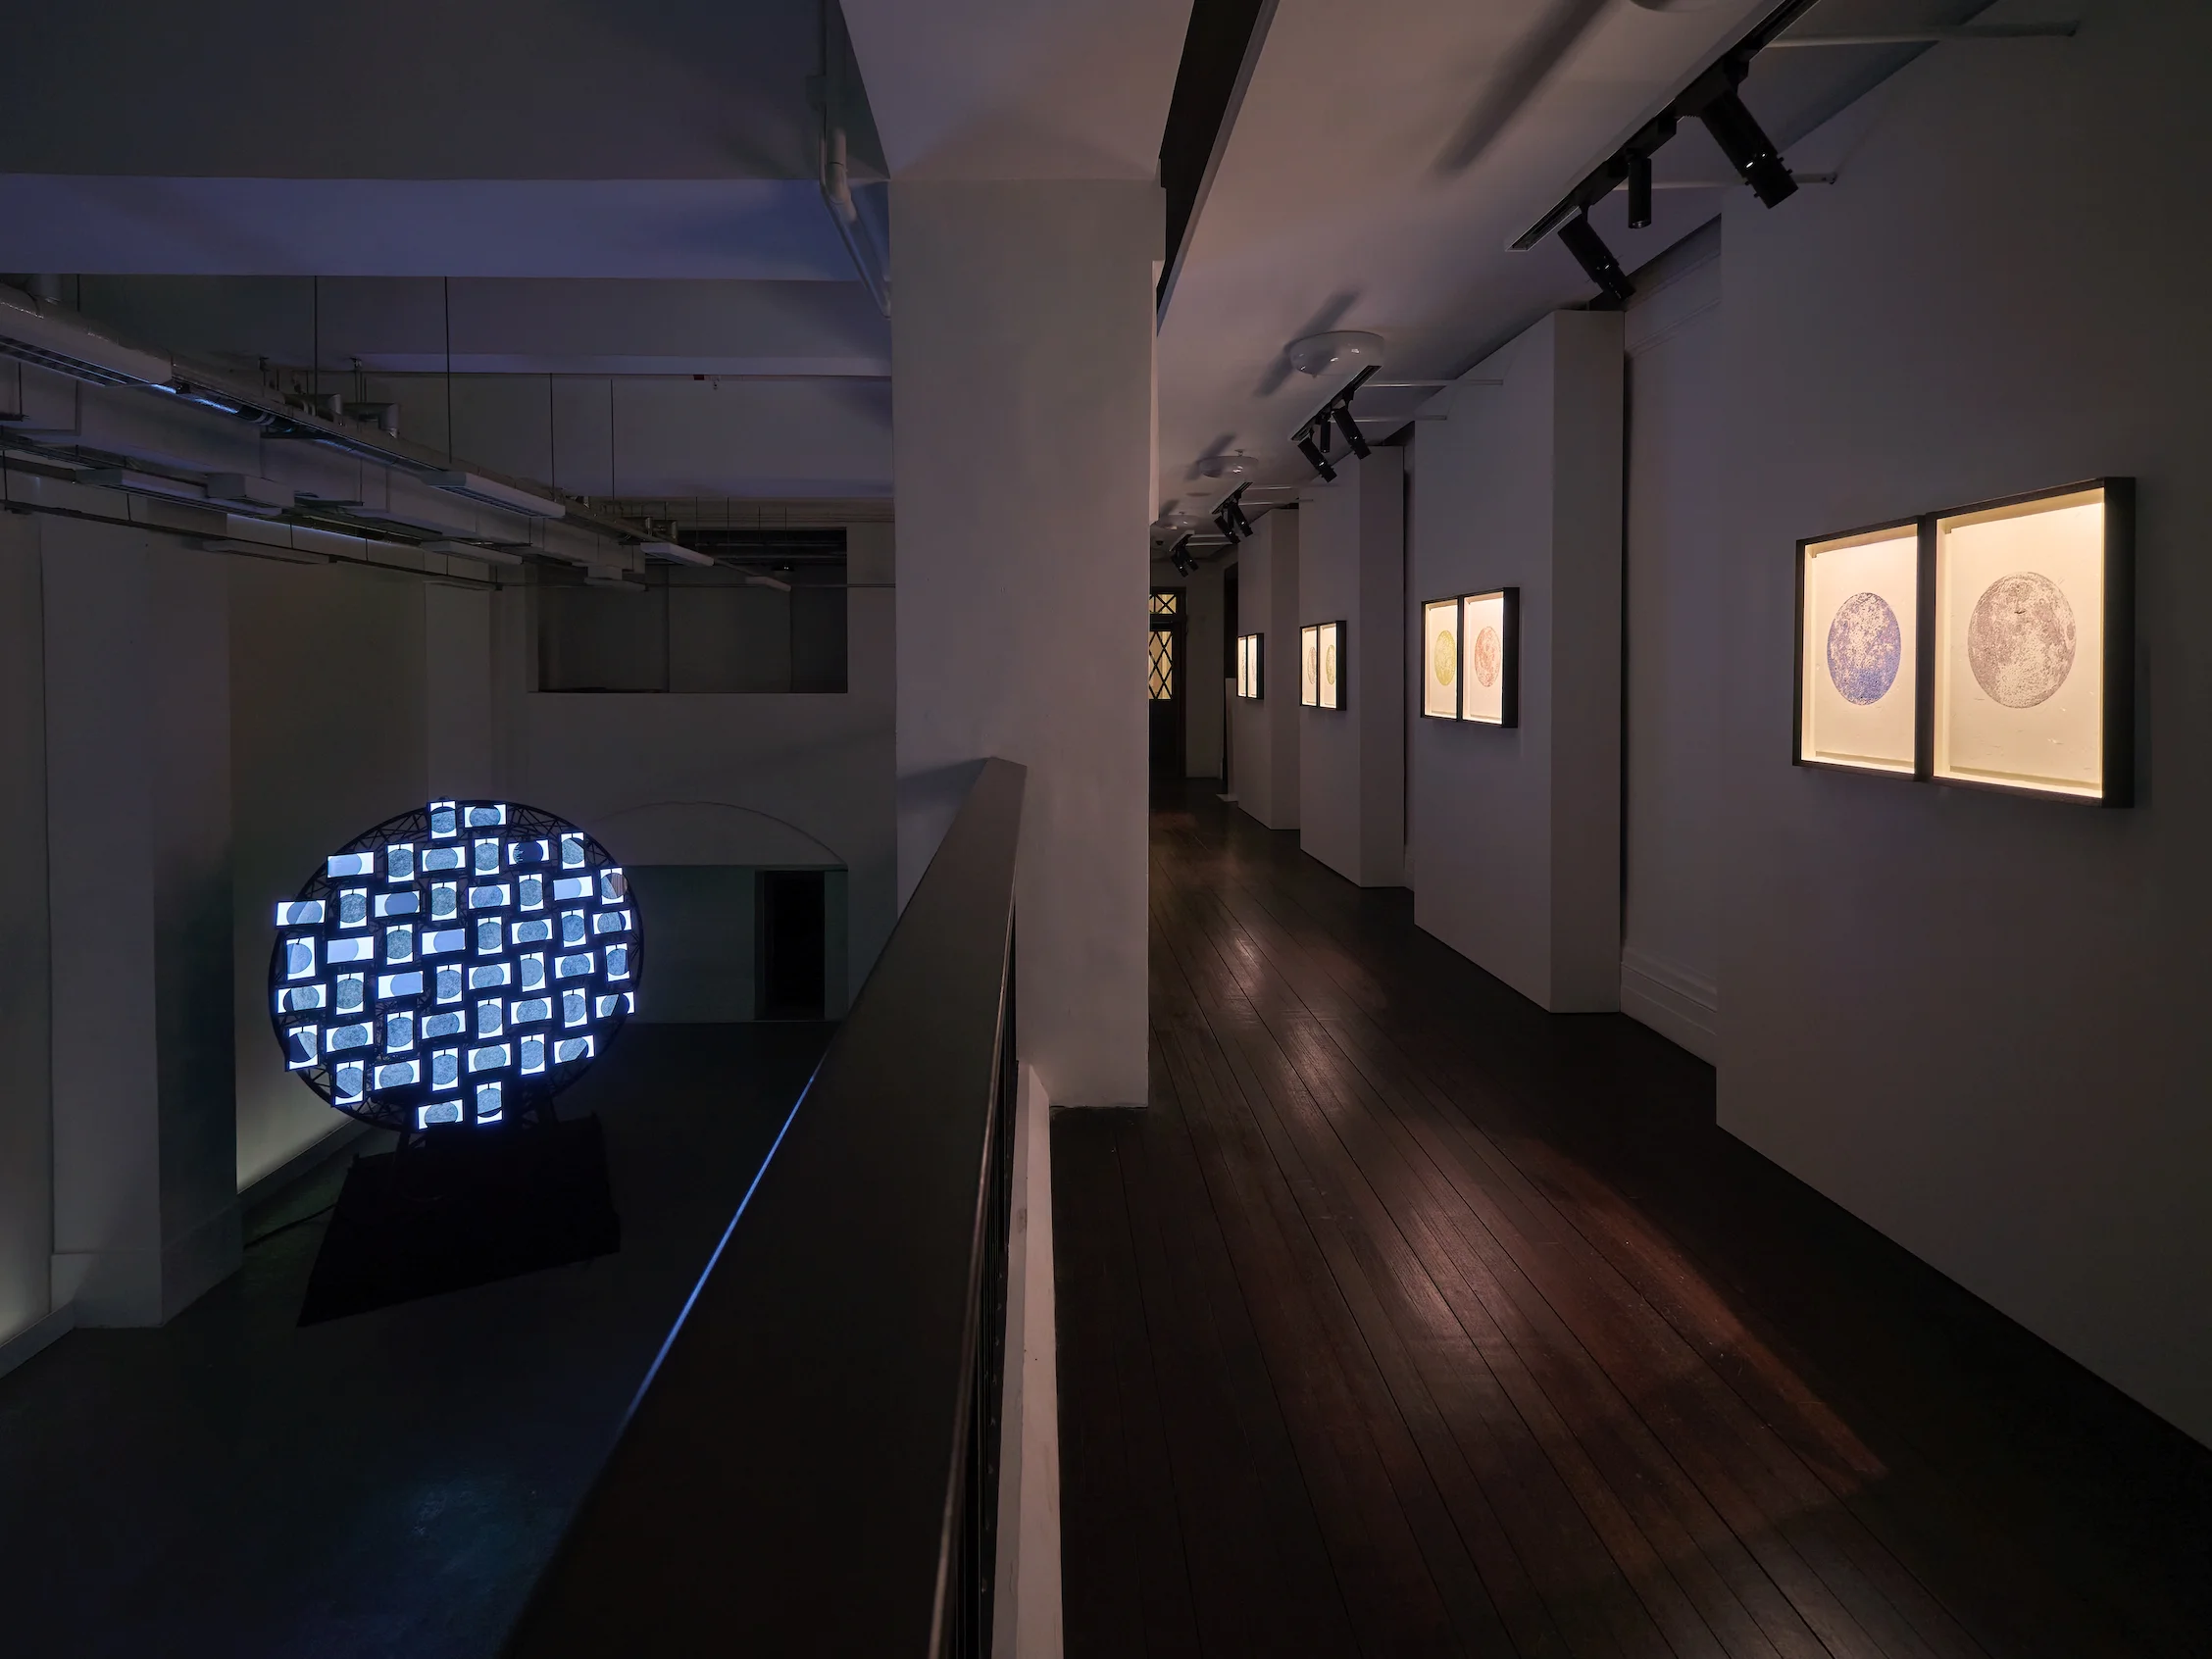 許方華的大型藝術裝置《月逝無聲》強調視覺表現於科學和我們對宇宙的理解上的關鍵角色。